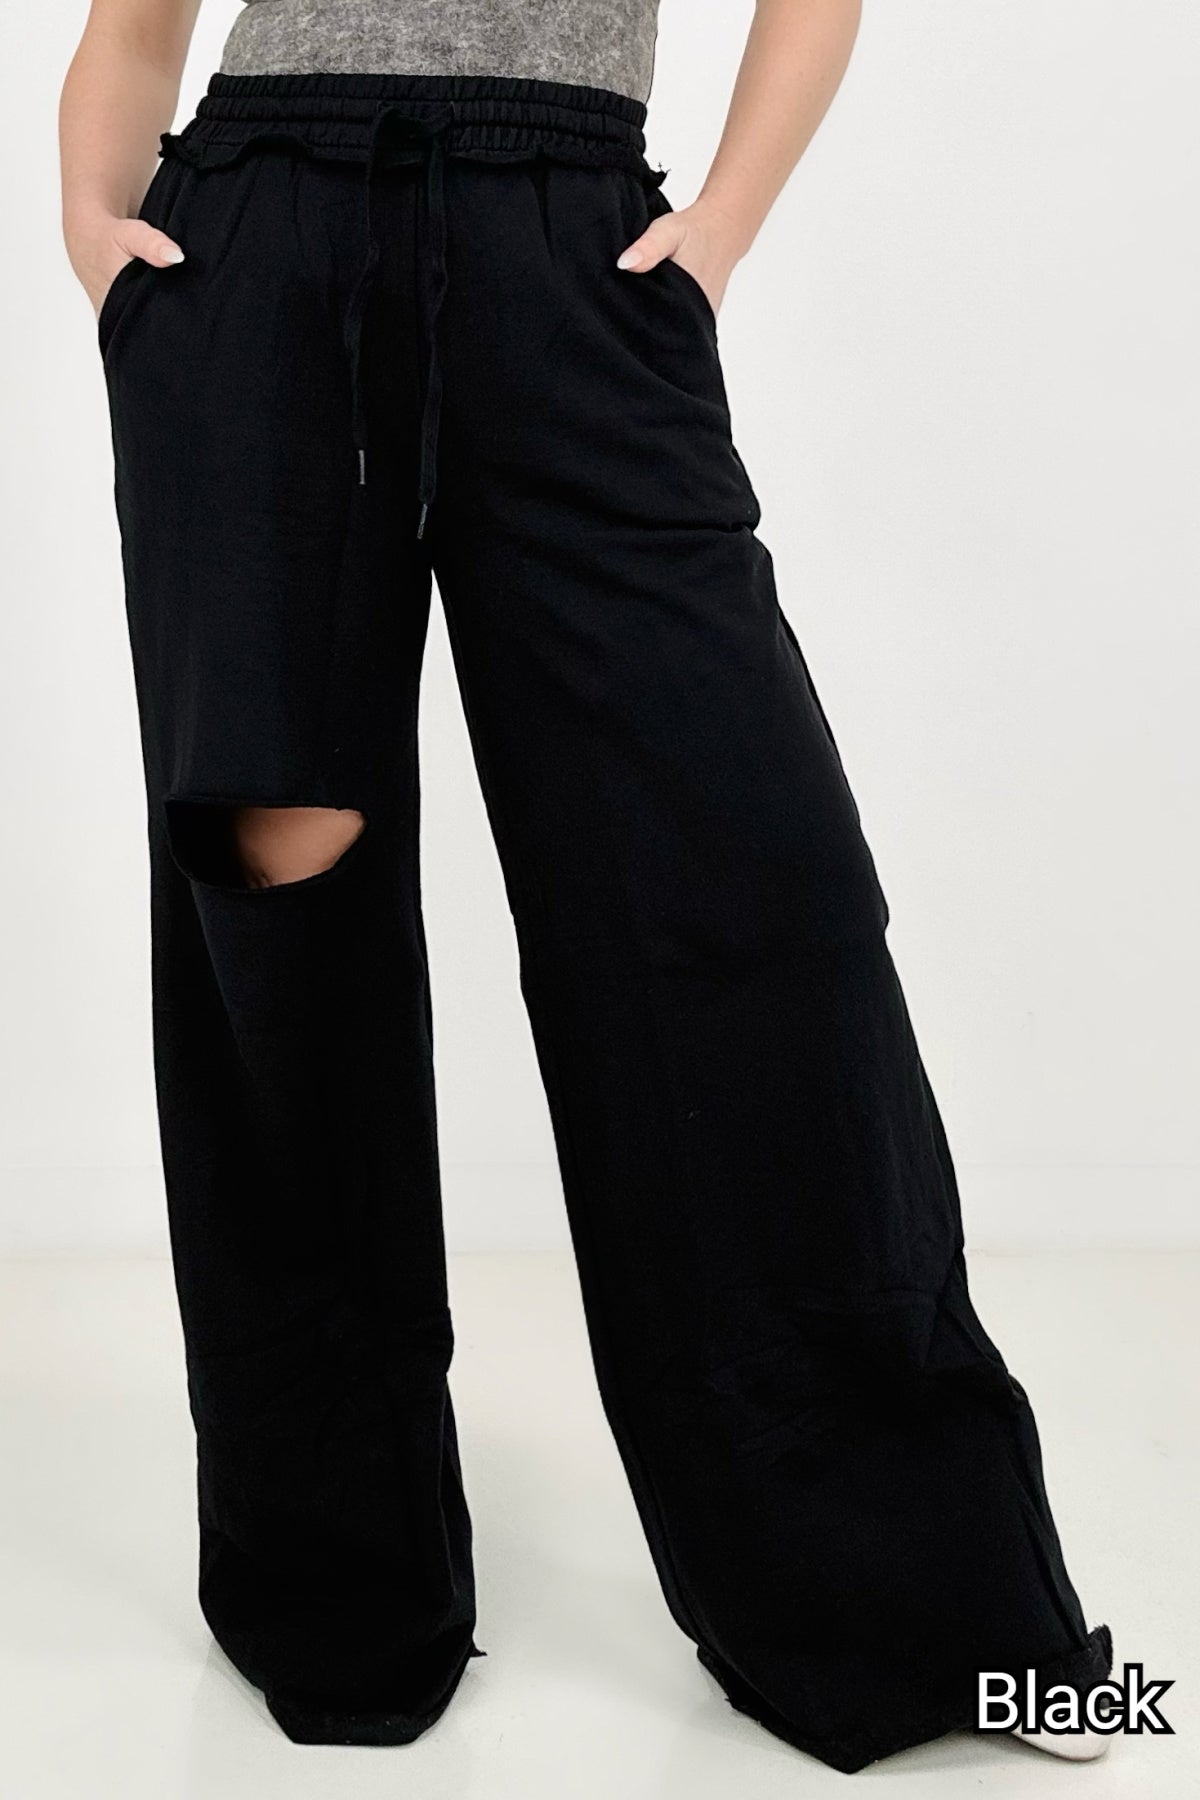 Zenana Womens Lounge Pants Plus 1X Black Wide Leg Distressed